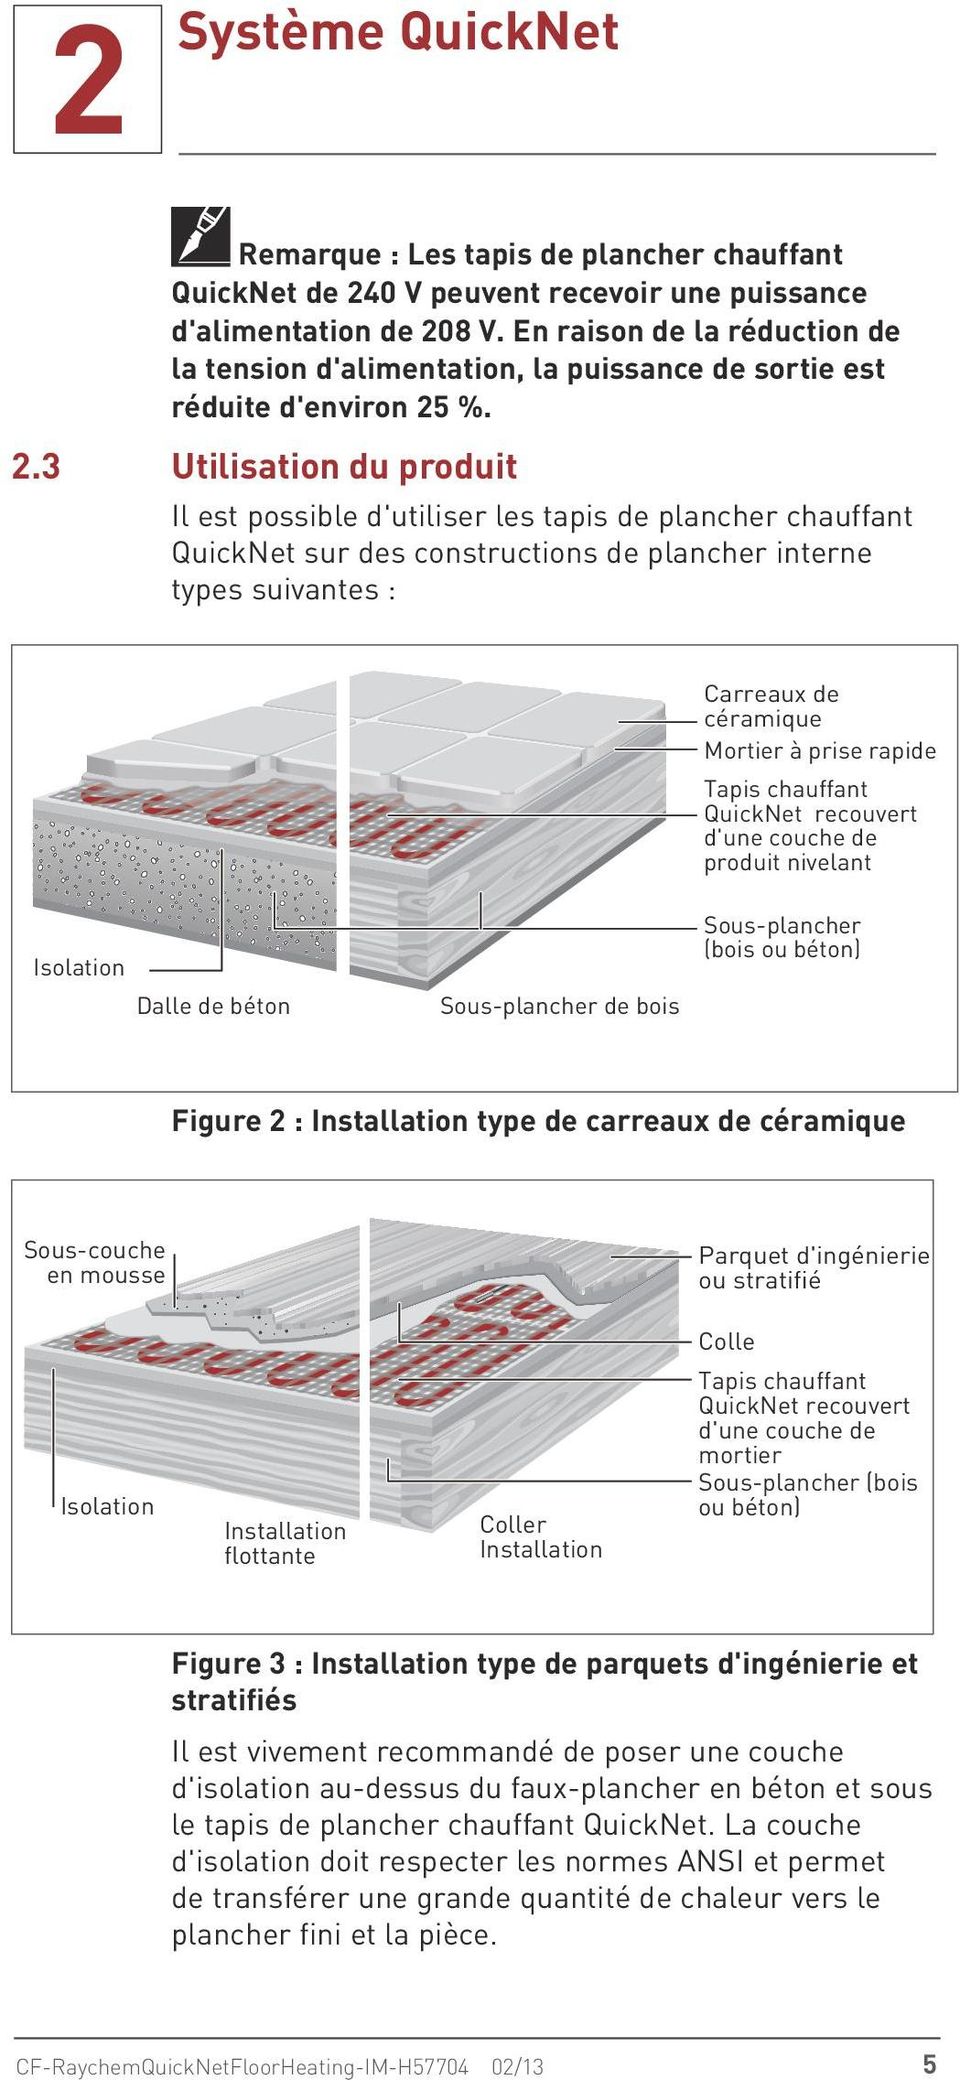 %. 2.3 Utilisation du produit Il est possible d'utiliser les tapis de plancher chauffant QuickNet sur des constructions de plancher interne types suivantes : Carreaux de céramique Mortier à prise